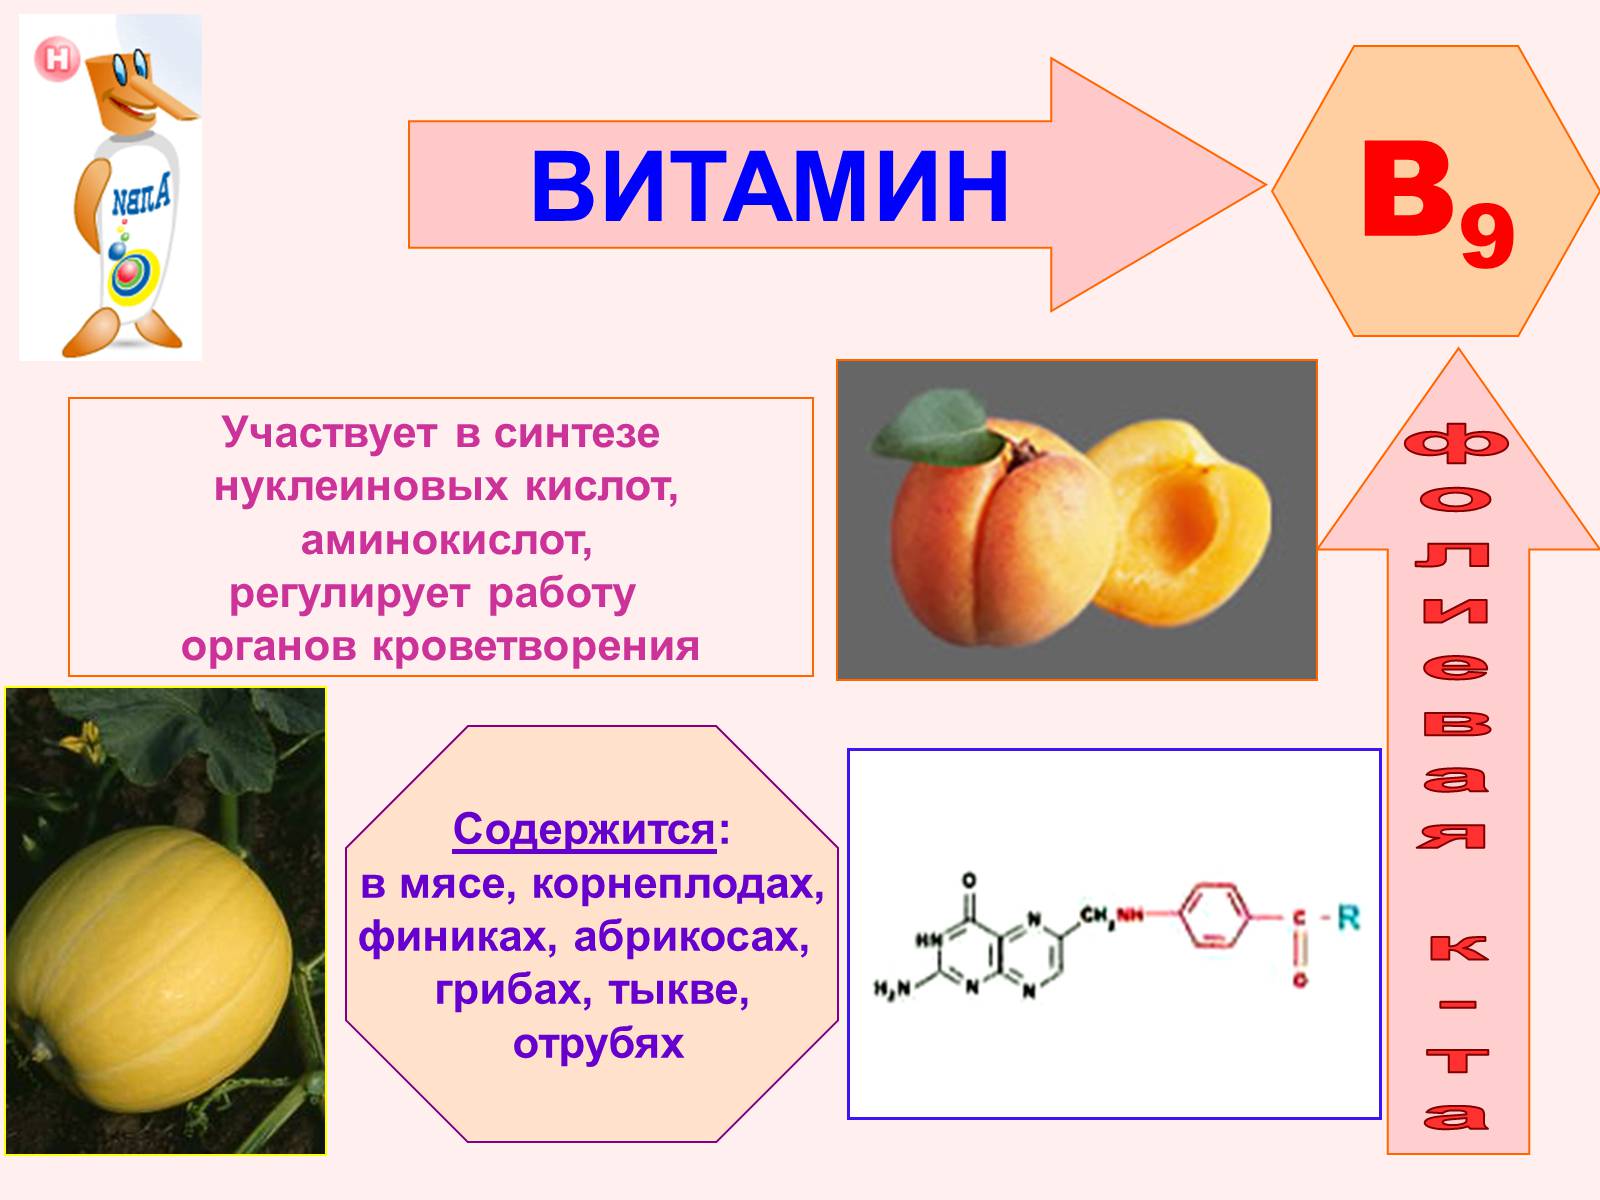 Нуклеиновые кислоты витамины. Фолиевая кислота витамин в9. Витамин б9 фолиевая кислота. Витамин в9 название витамина. Витамин б9 фолиевая кислота продукты.